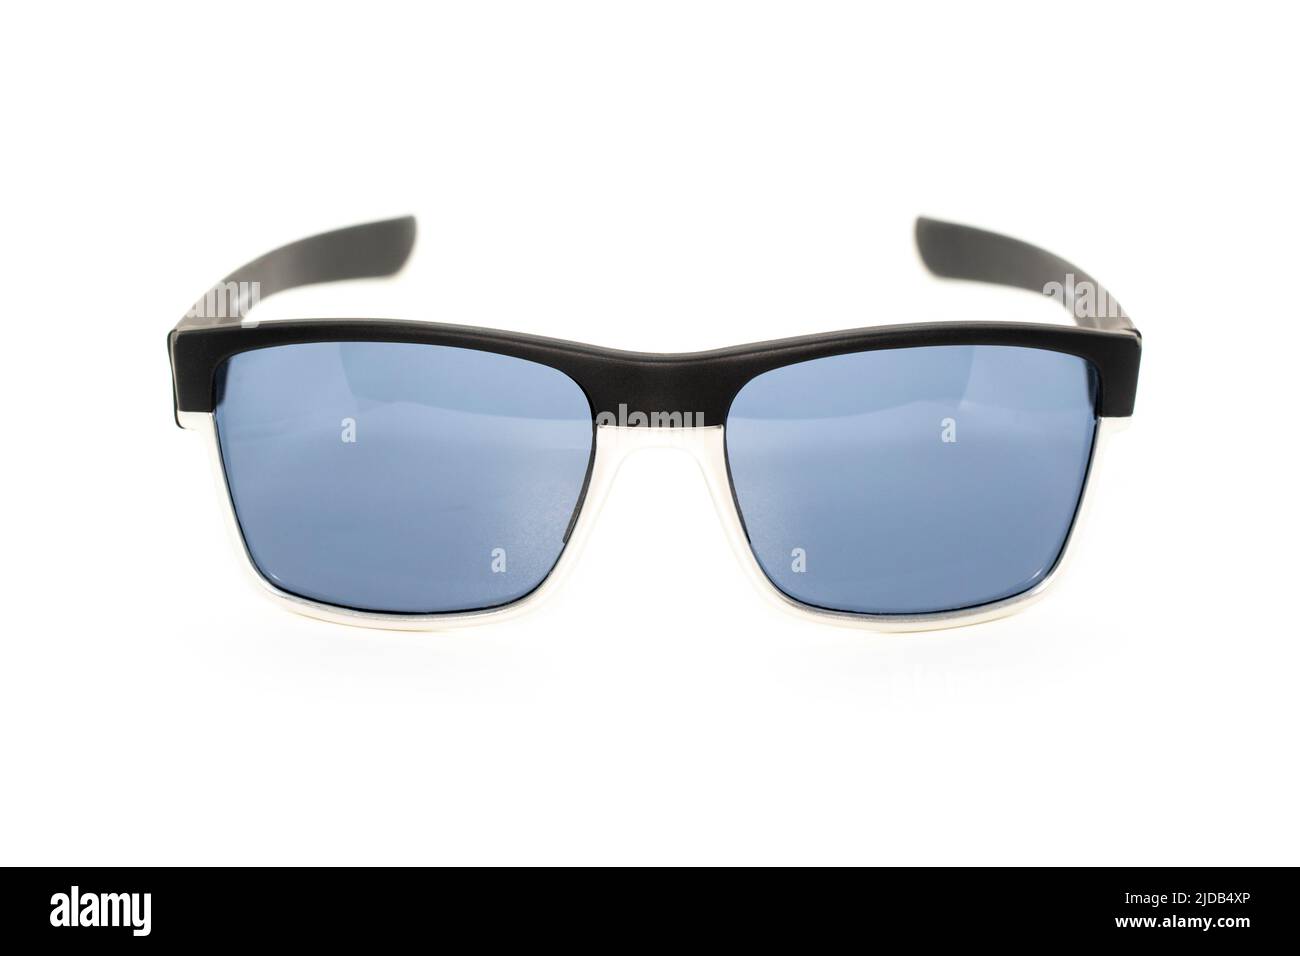 Image de lunettes de soleil modernes et tendance isolées sur fond blanc, lunettes. Banque D'Images